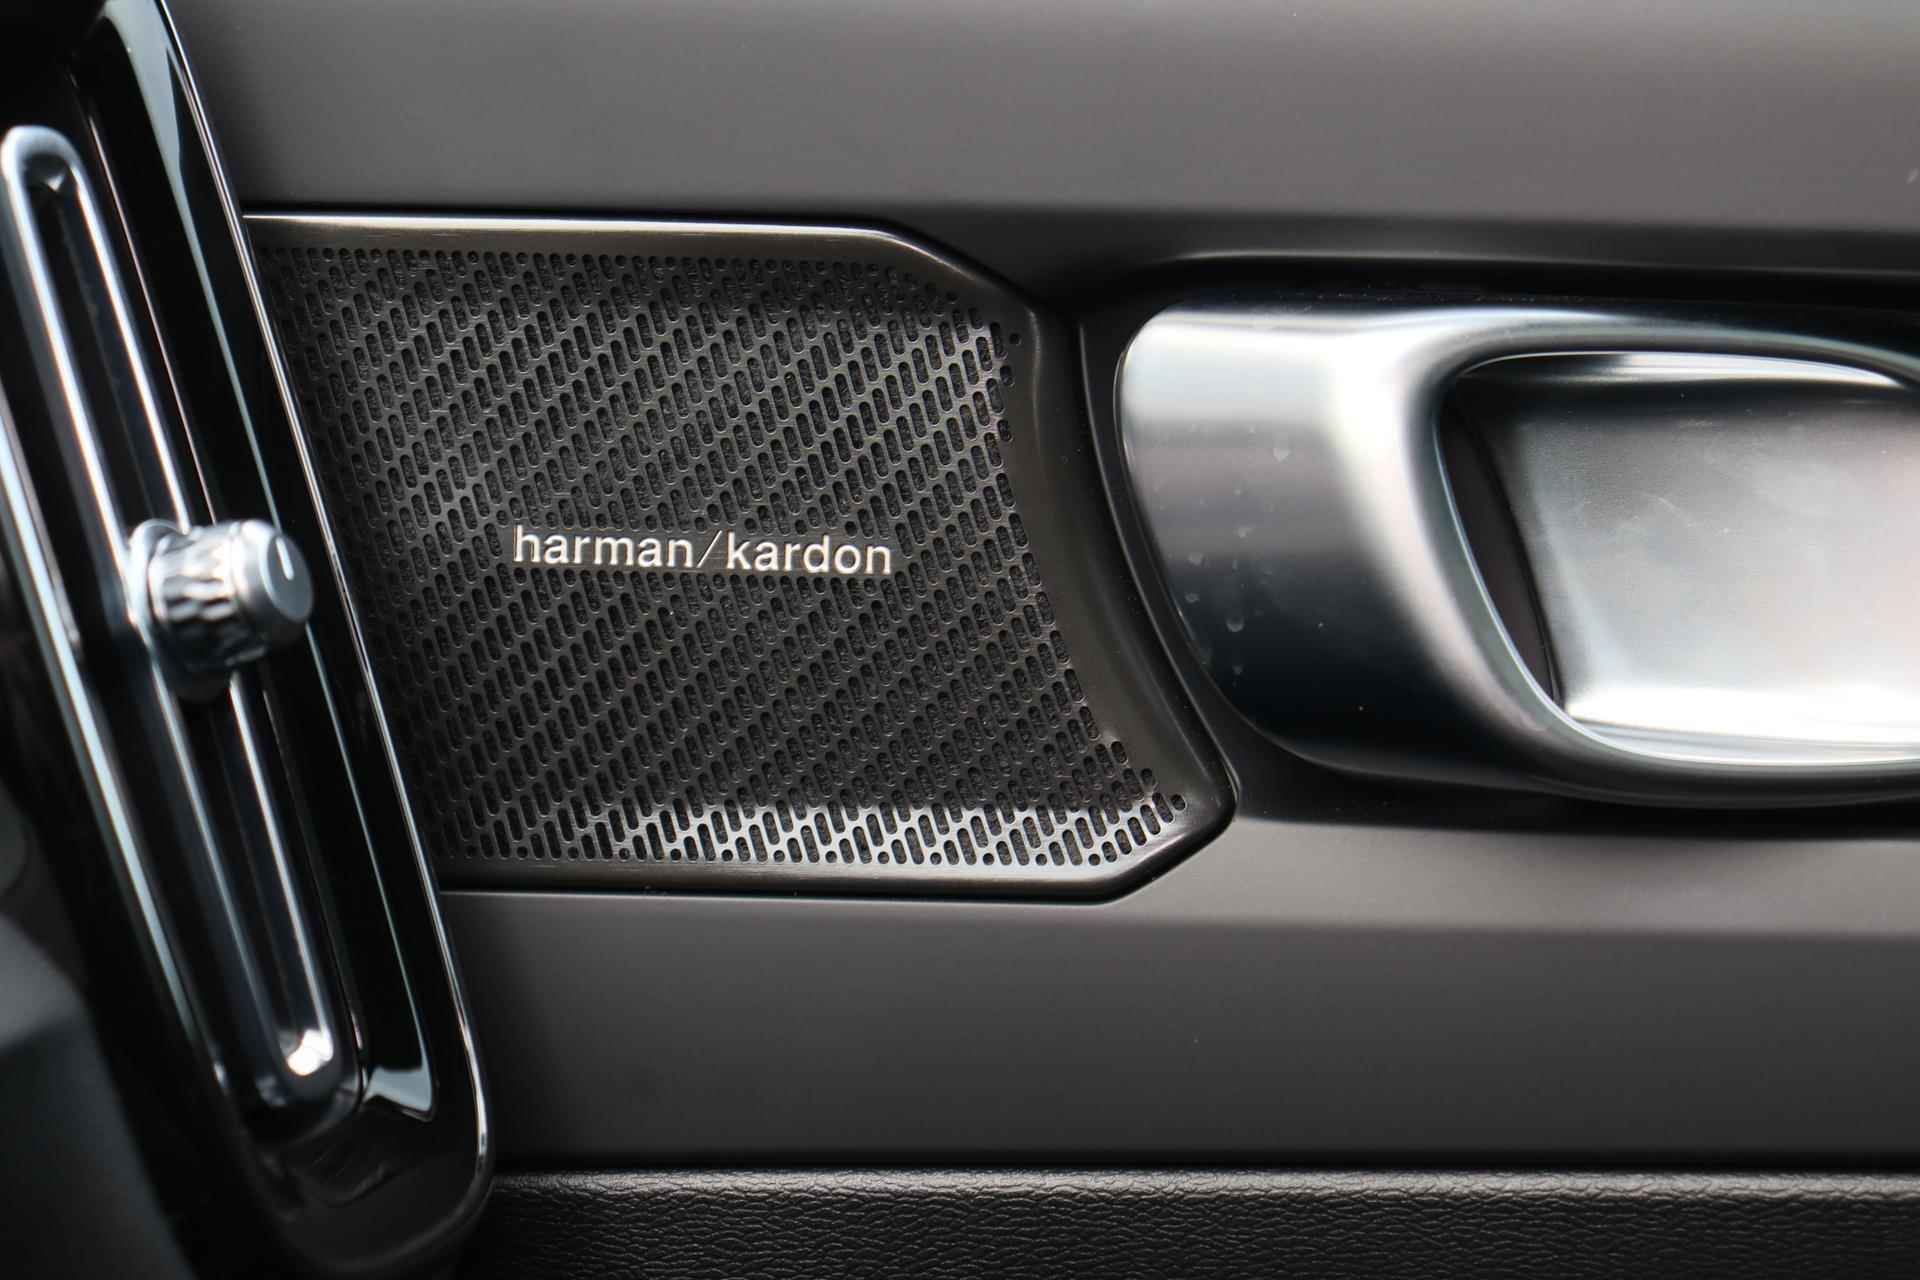 Volvo C40 Recharge Ultimate 69 kWh - Panoramadak - IntelliSafe Assist & Surround - Harman/Kardon audio - Verwarmde voorstoelen & stuur - Parkeersensoren voor & achter - Elektr. bedienb. voorstoelen met links geheugen - Draadloze tel. lader - Warmtepomp - Extra getint glas - 20' LMV - 18/25